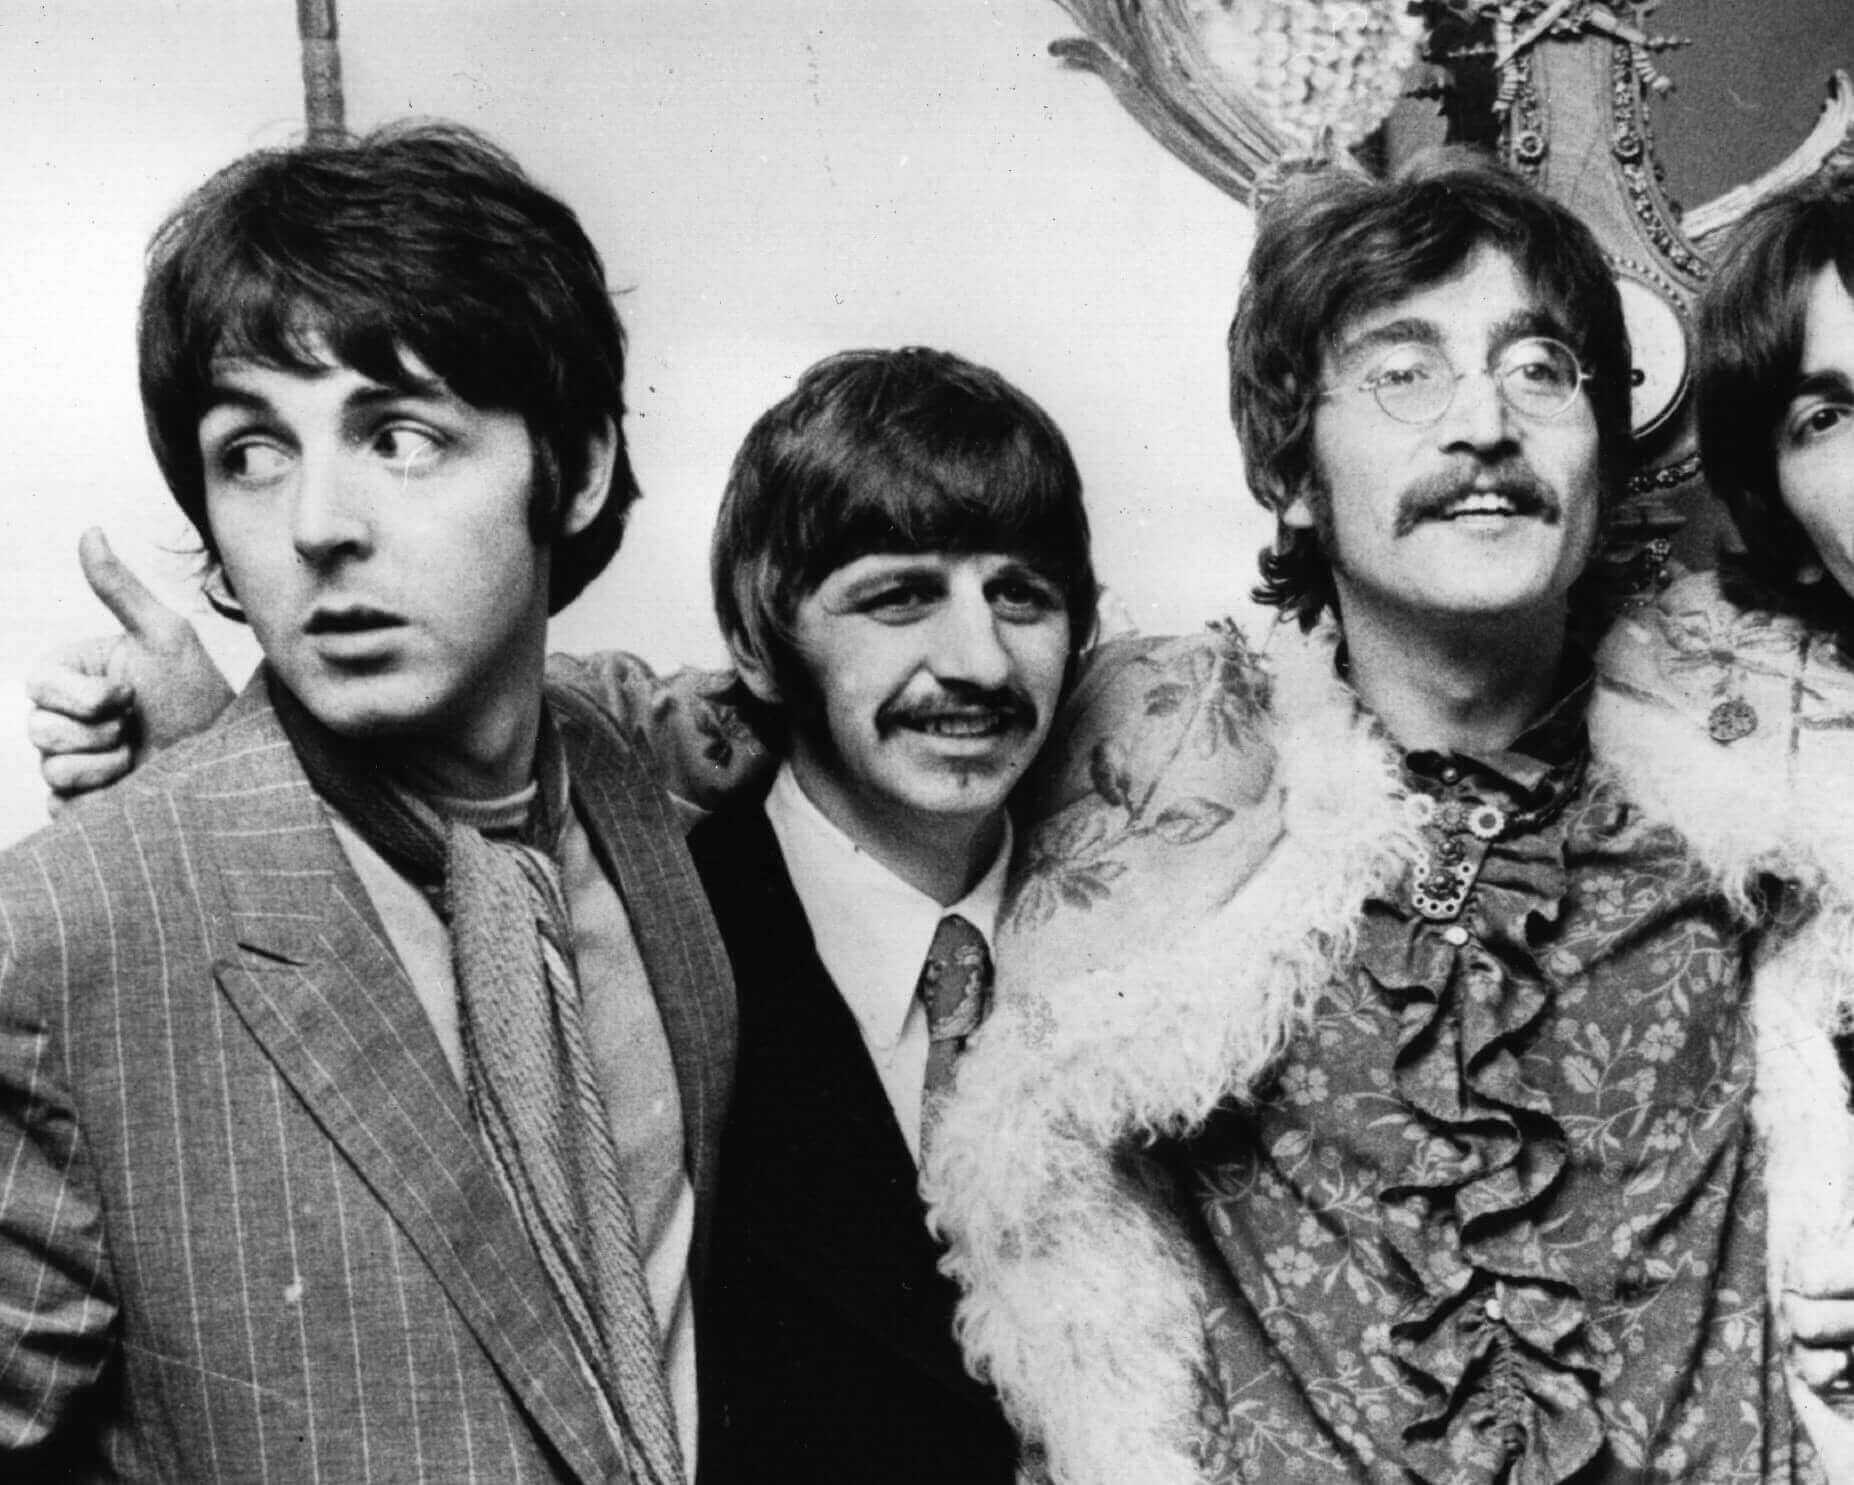 Paul McCartney, Ringo Starr, and John Lennon during The Beatles' "Penny Lane" era